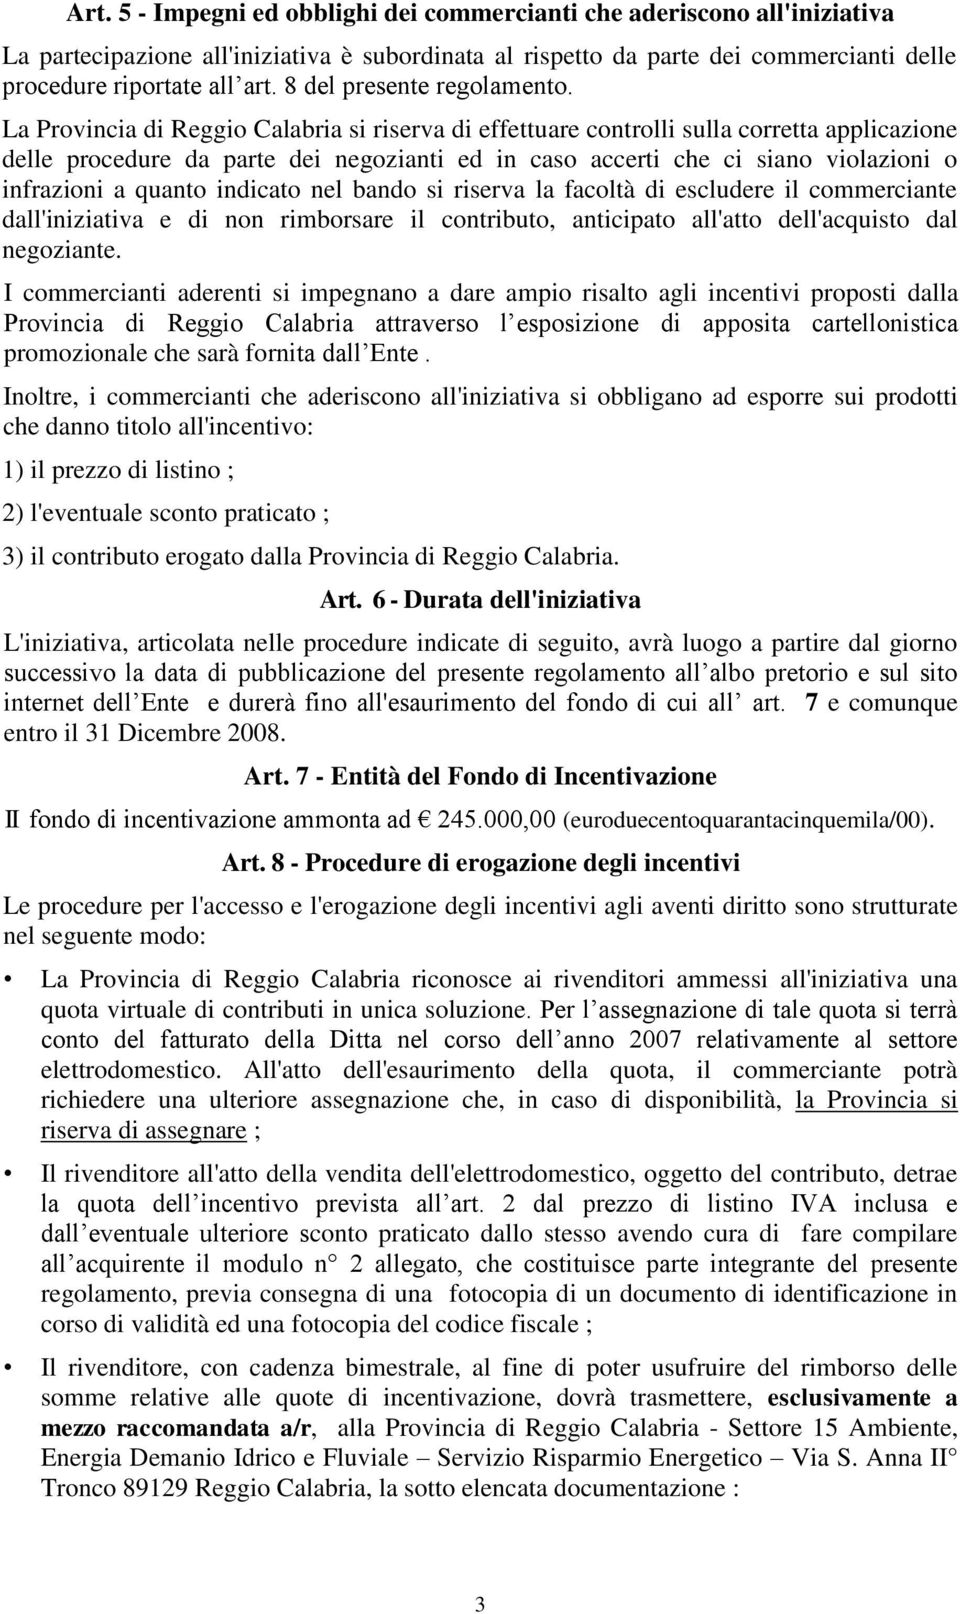 La Provincia di Reggio Calabria si riserva di effettuare controlli sulla corretta applicazione delle procedure da parte dei negozianti ed in caso accerti che ci siano violazioni o infrazioni a quanto